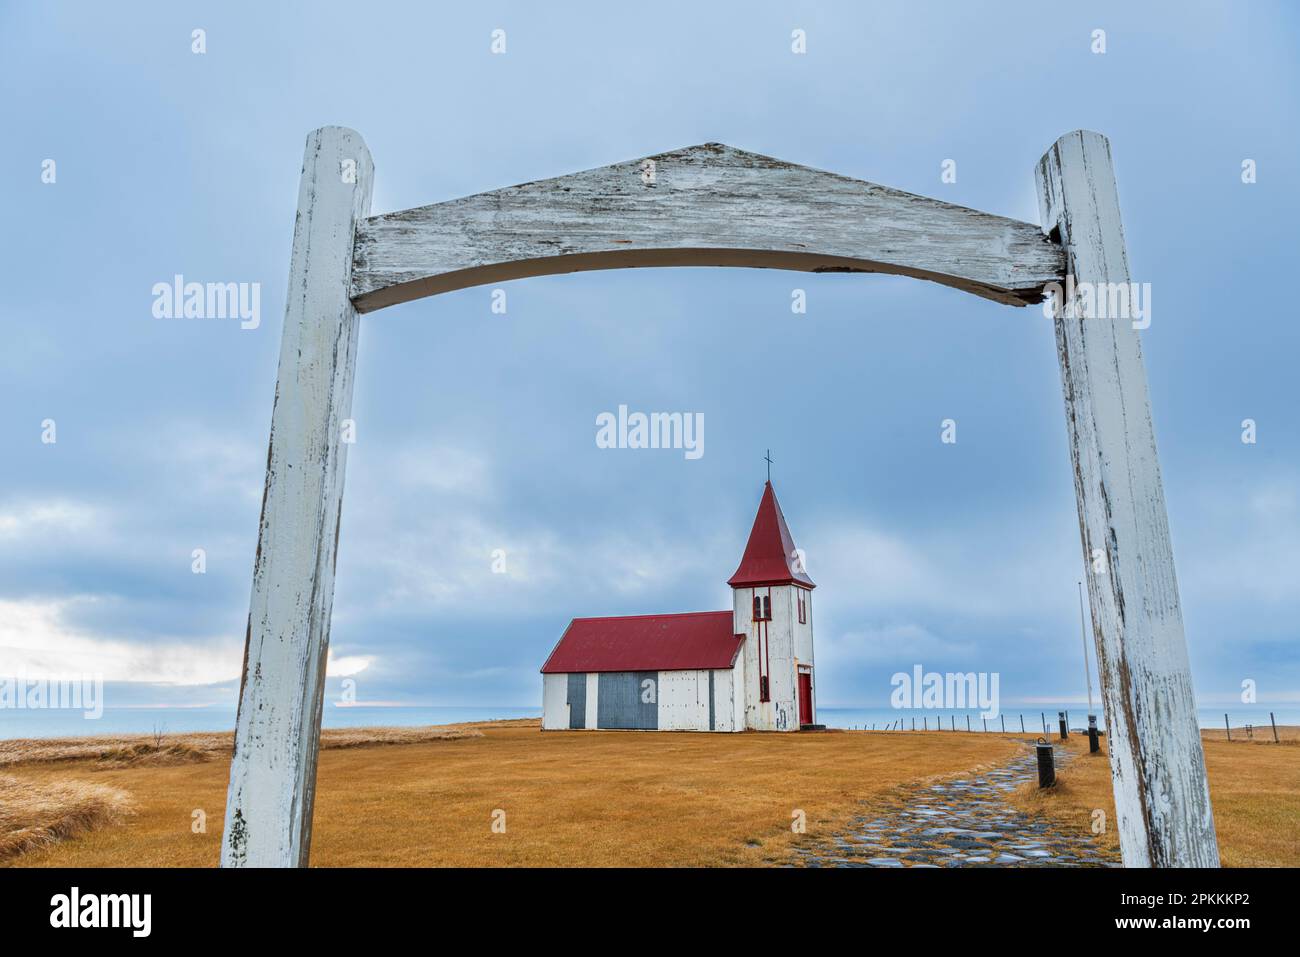 L'ancienne église en bois de Hellnakirkja, Hellnar, péninsule de Snaefellsnes, Vesturland, Islande de l'Ouest, Islande, régions polaires Banque D'Images